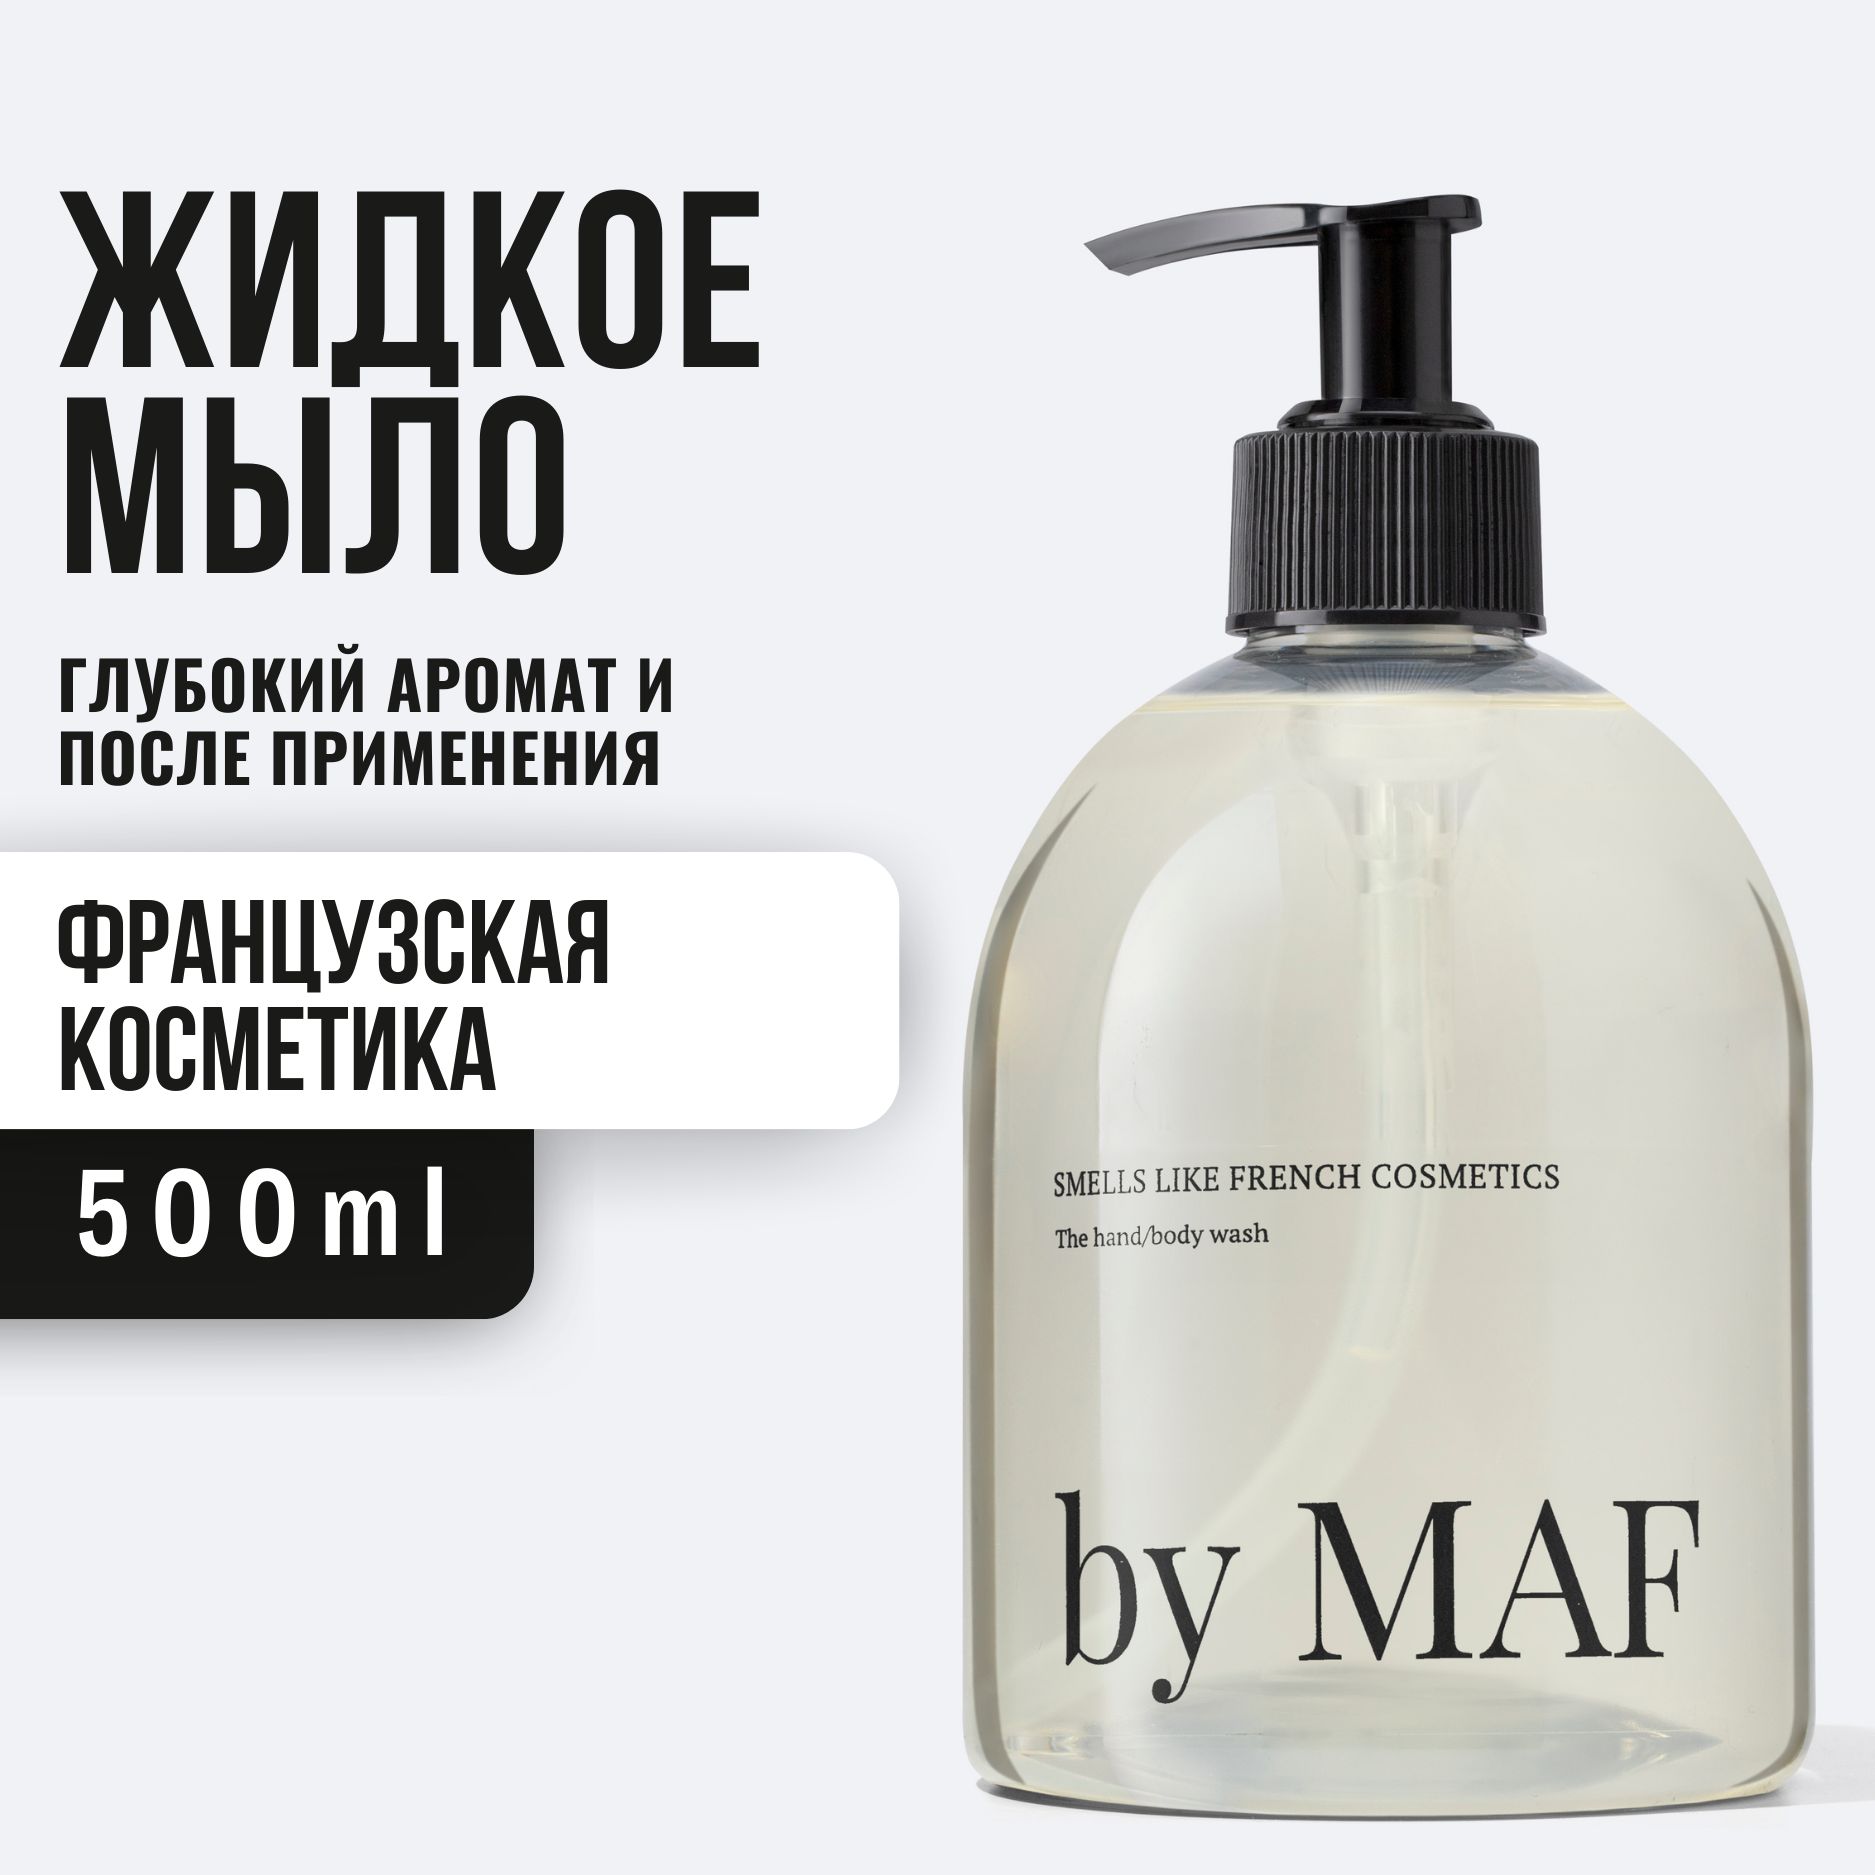 By MAF гель для душа. By MAF smells like French Cosmetics купить. By maf